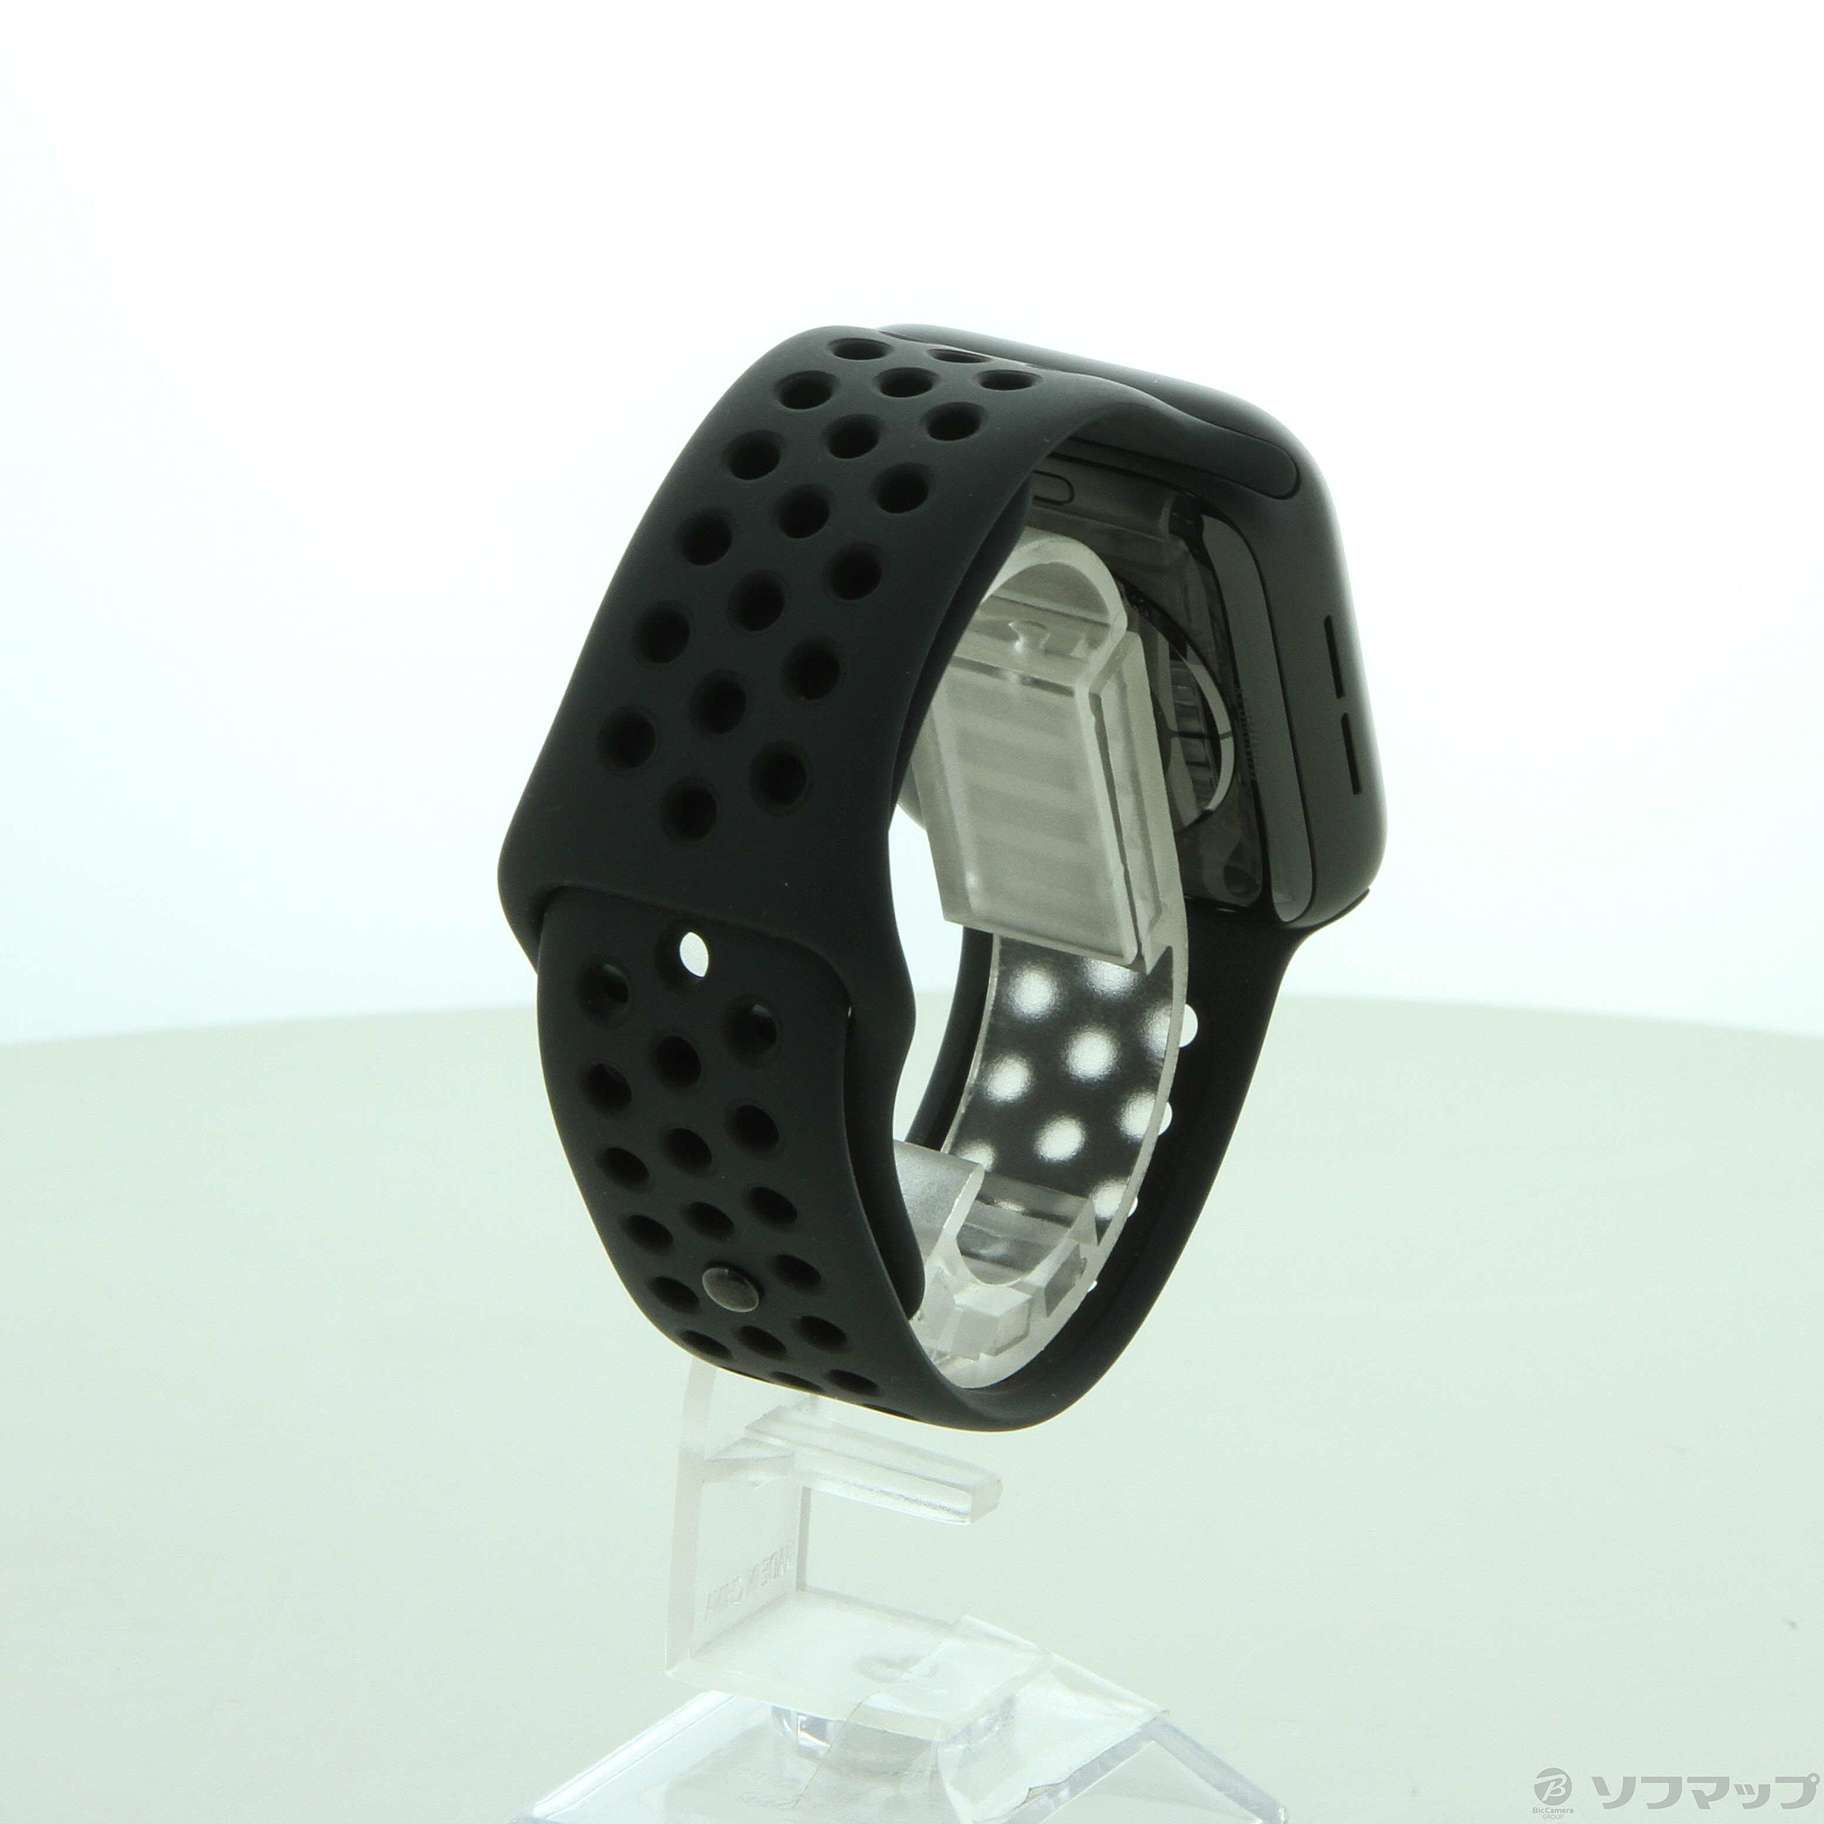 セール対象品 Apple Watch Series 5 Nike GPS + Cellular 44mm スペースグレイアルミニウムケース  アンスラサイト／ブラックNIKEスポーツバンド